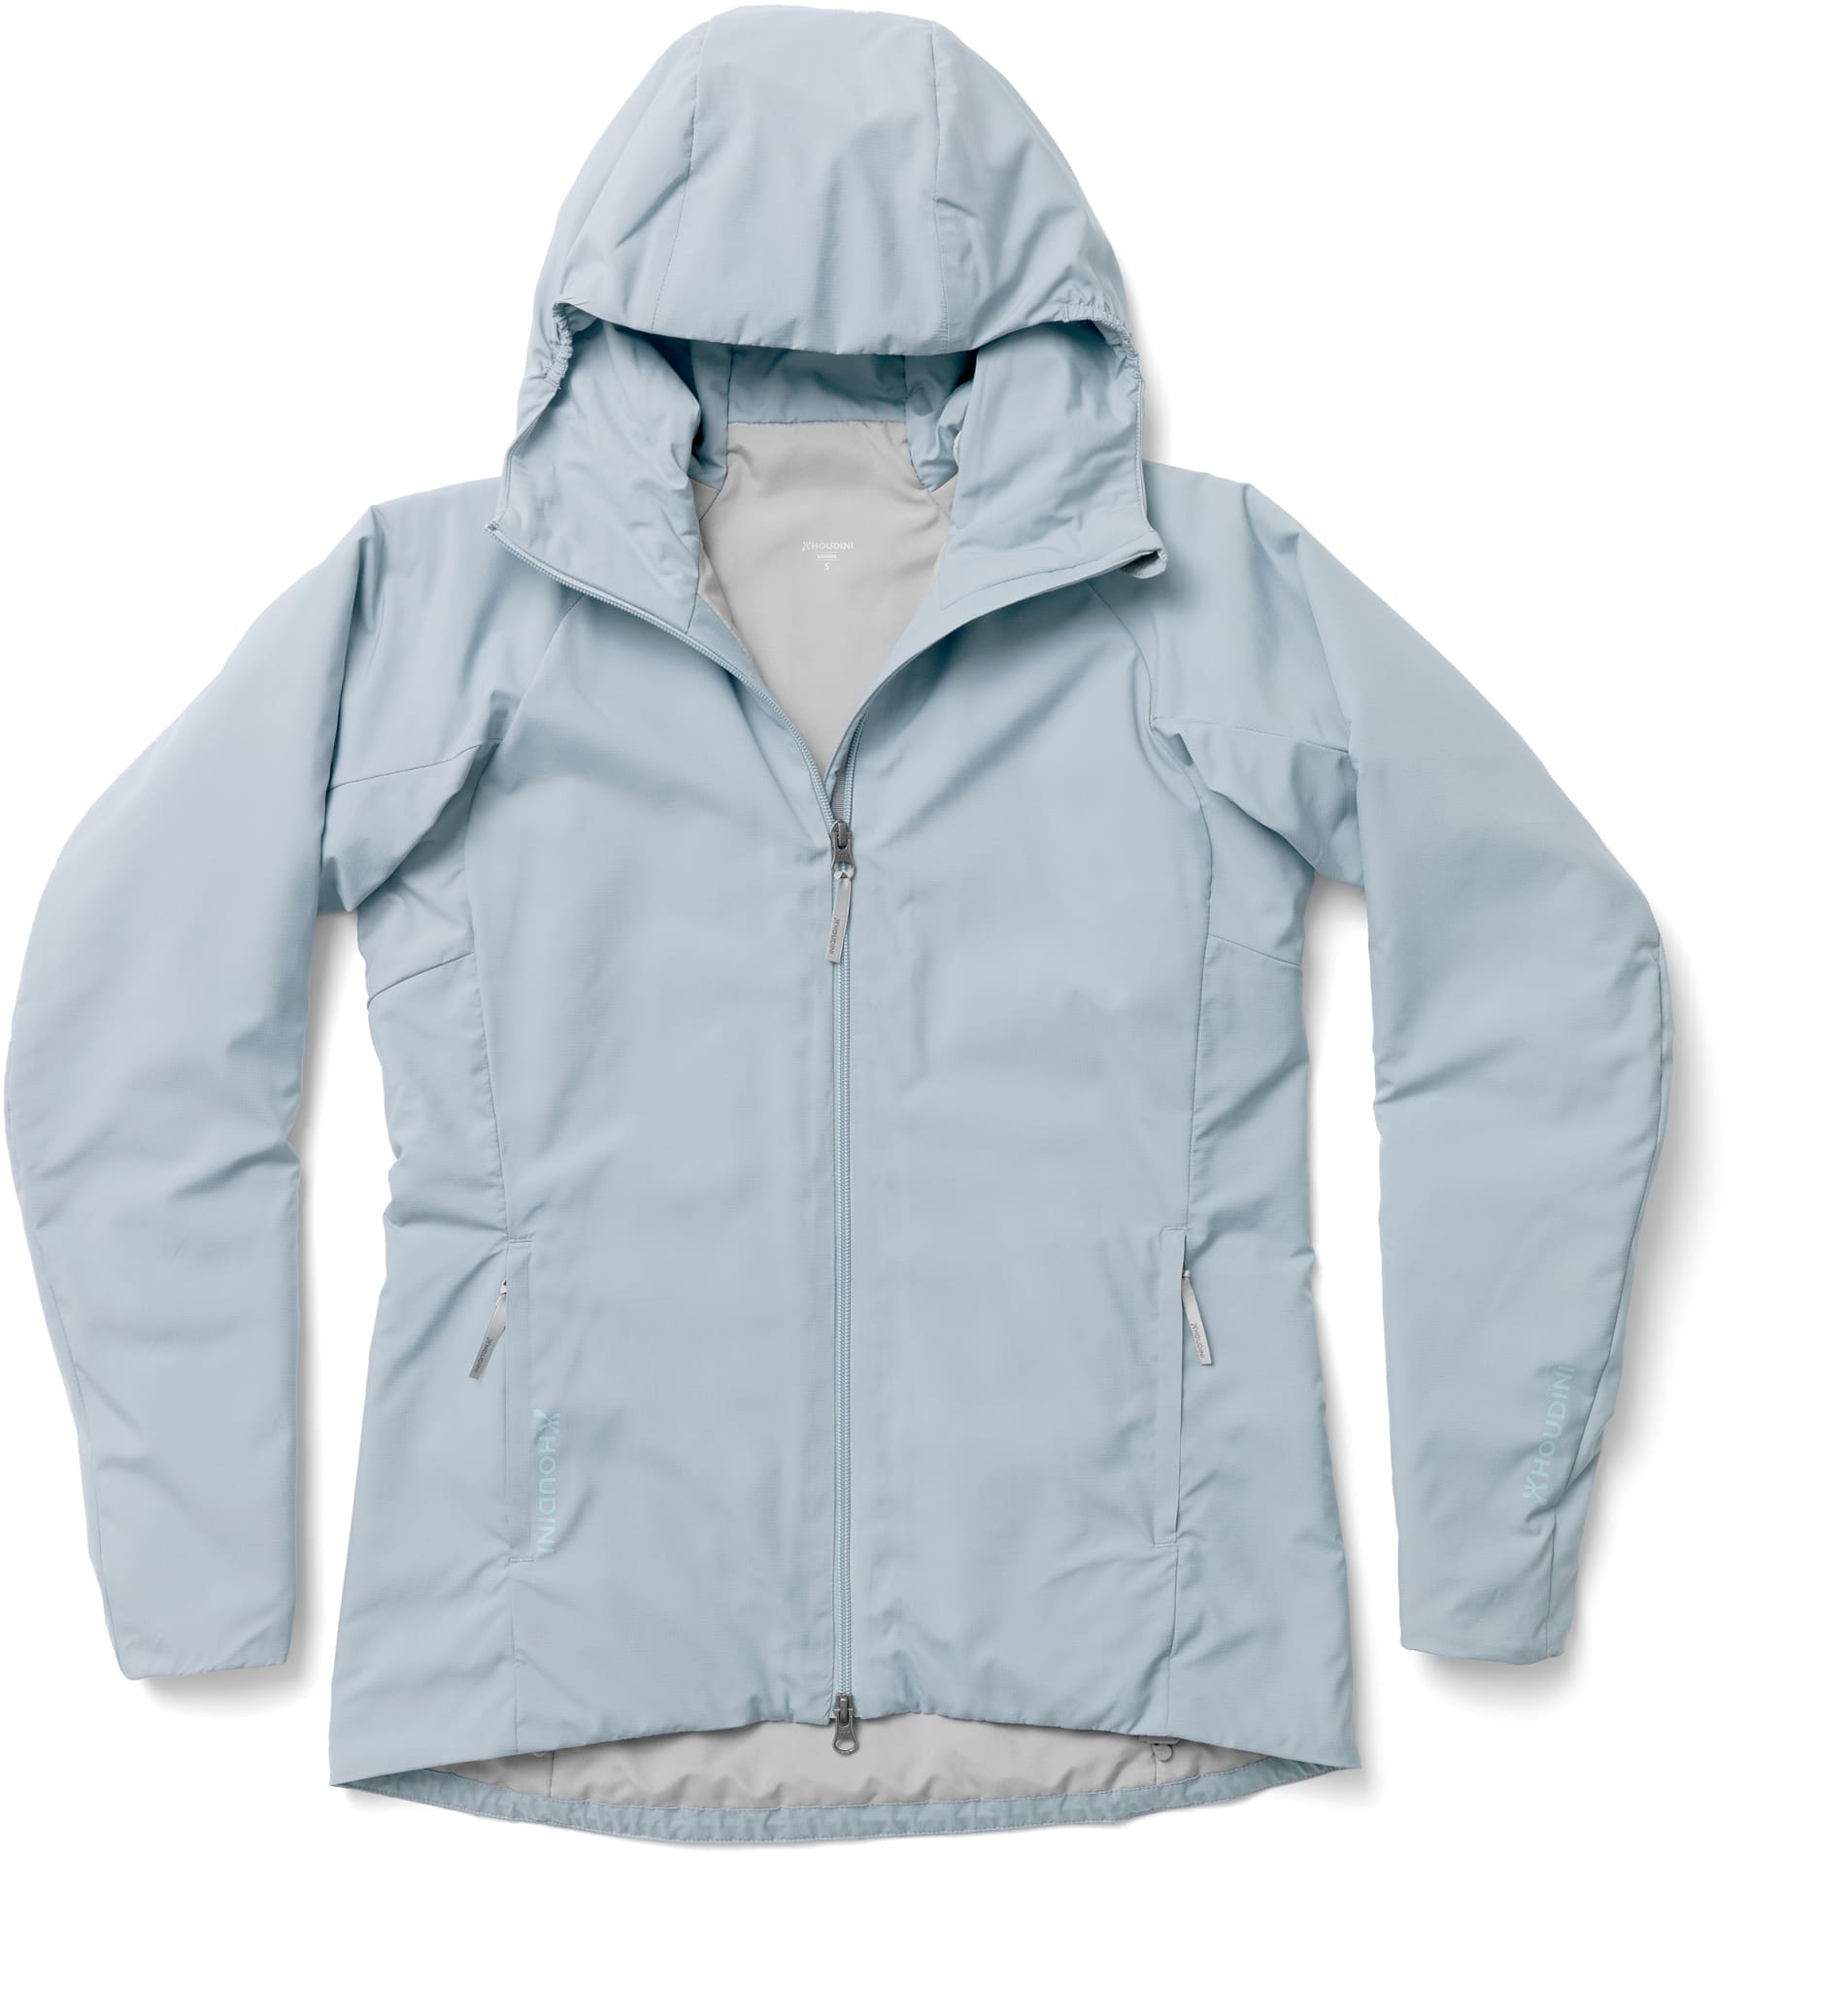 Isolert jakke som puster godt og kan brukes som mellomlag eller for seg selv